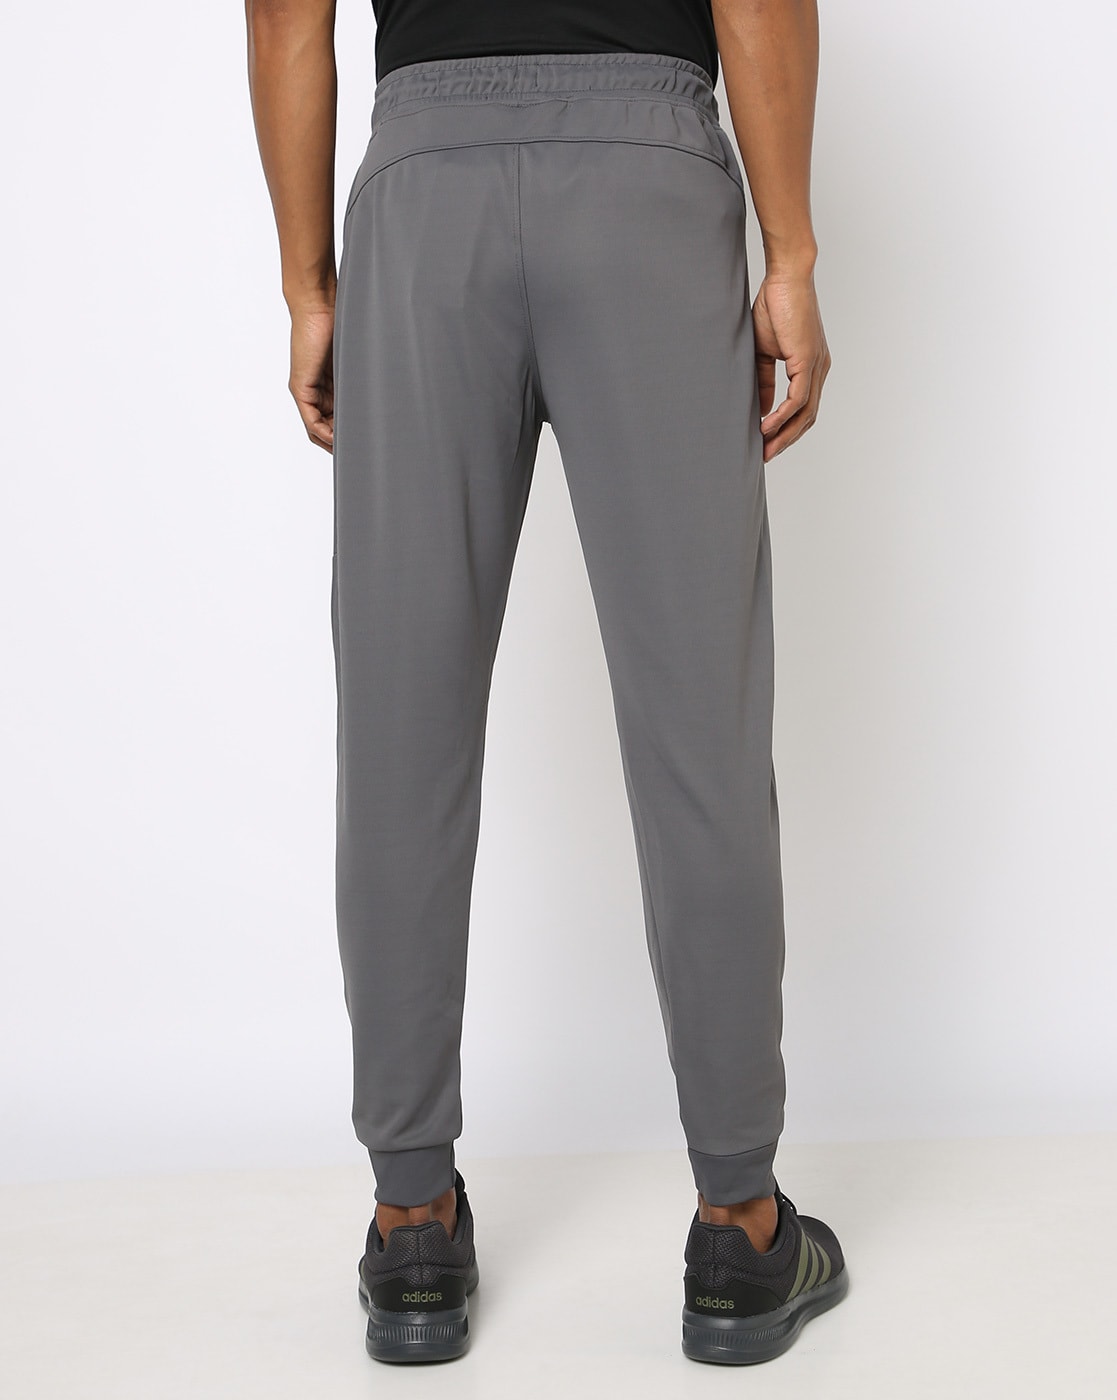 VAN HEUSEN Solid Men Grey Track Pants - Buy VAN HEUSEN Solid Men Grey Track  Pants Online at Best Prices in India | Flipkart.com